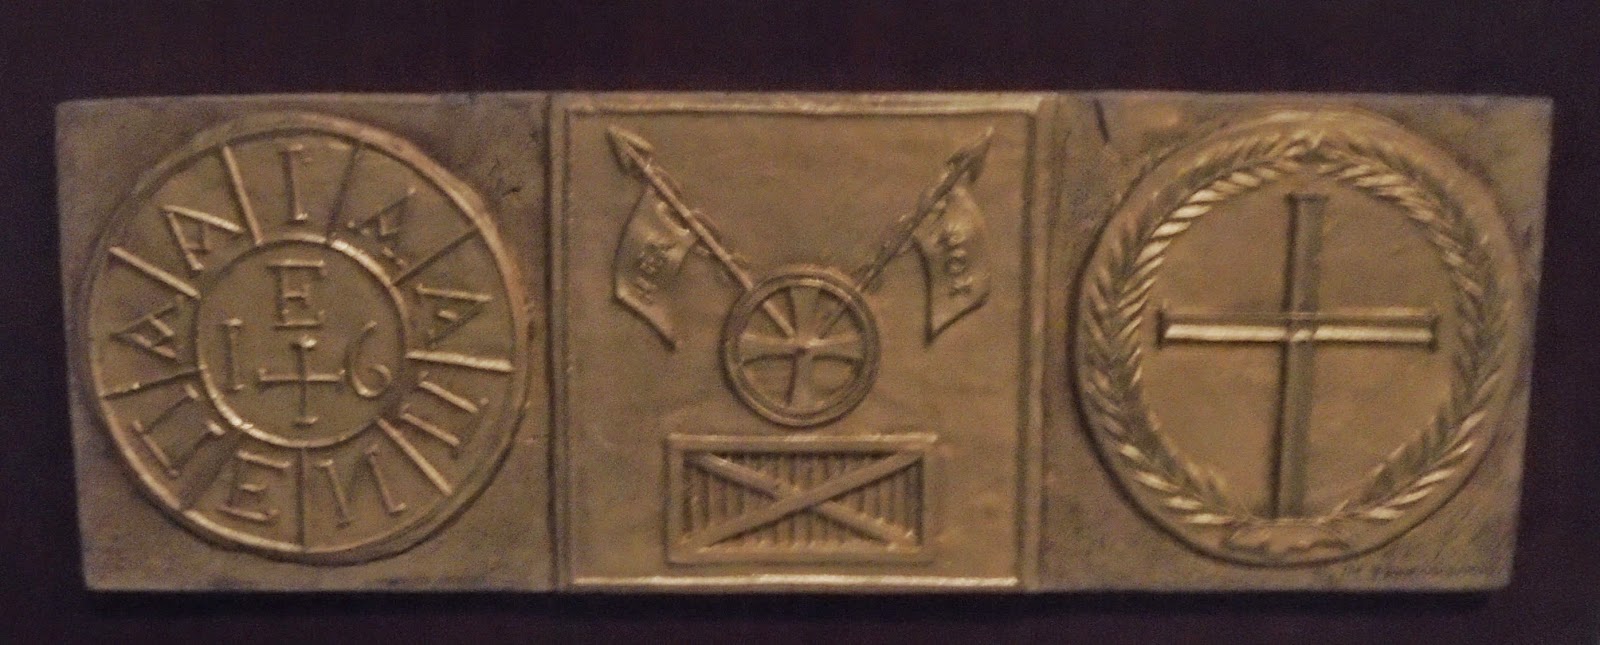 το έργο Σύμβολα Φιλικής Εταιρείας του Πραξιτέλη Τζανουλίνου στο Πολεμικό Μουσείο των Αθηνών